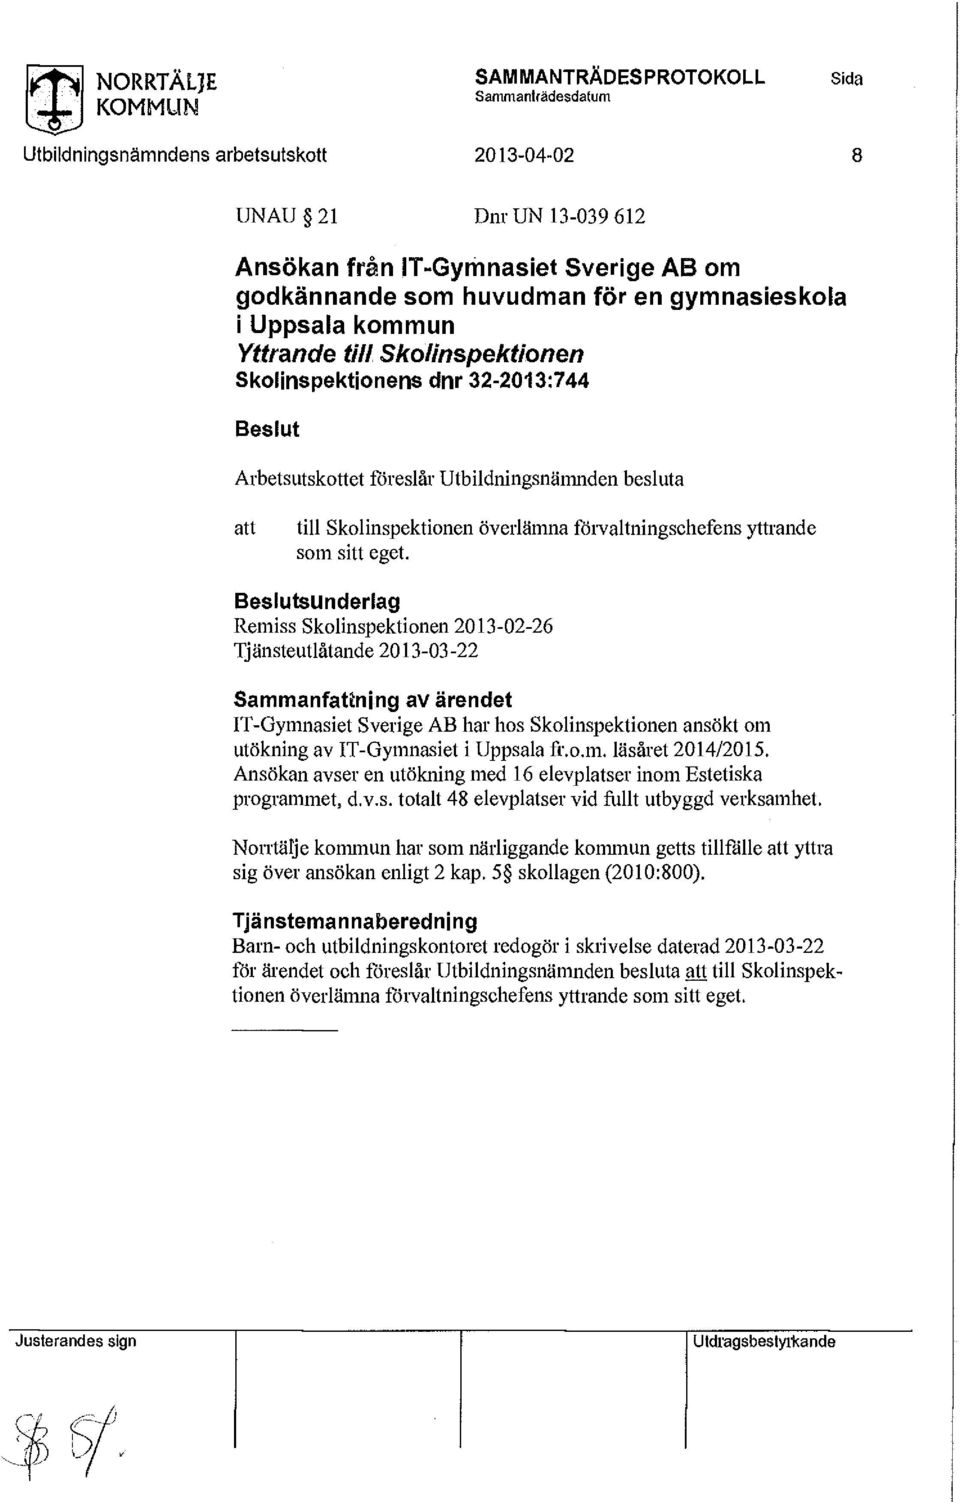 Skolinspektionen ansökt om utökning av IT-Gymnasiet i Uppsala fr.o.m. läsåret 2014/2015. Ansökan avser en utökning med 16 elevplatser inom Estetiska programmet, d.v.s. totalt 48 elevplatser vid fullt utbyggd verksamhet.